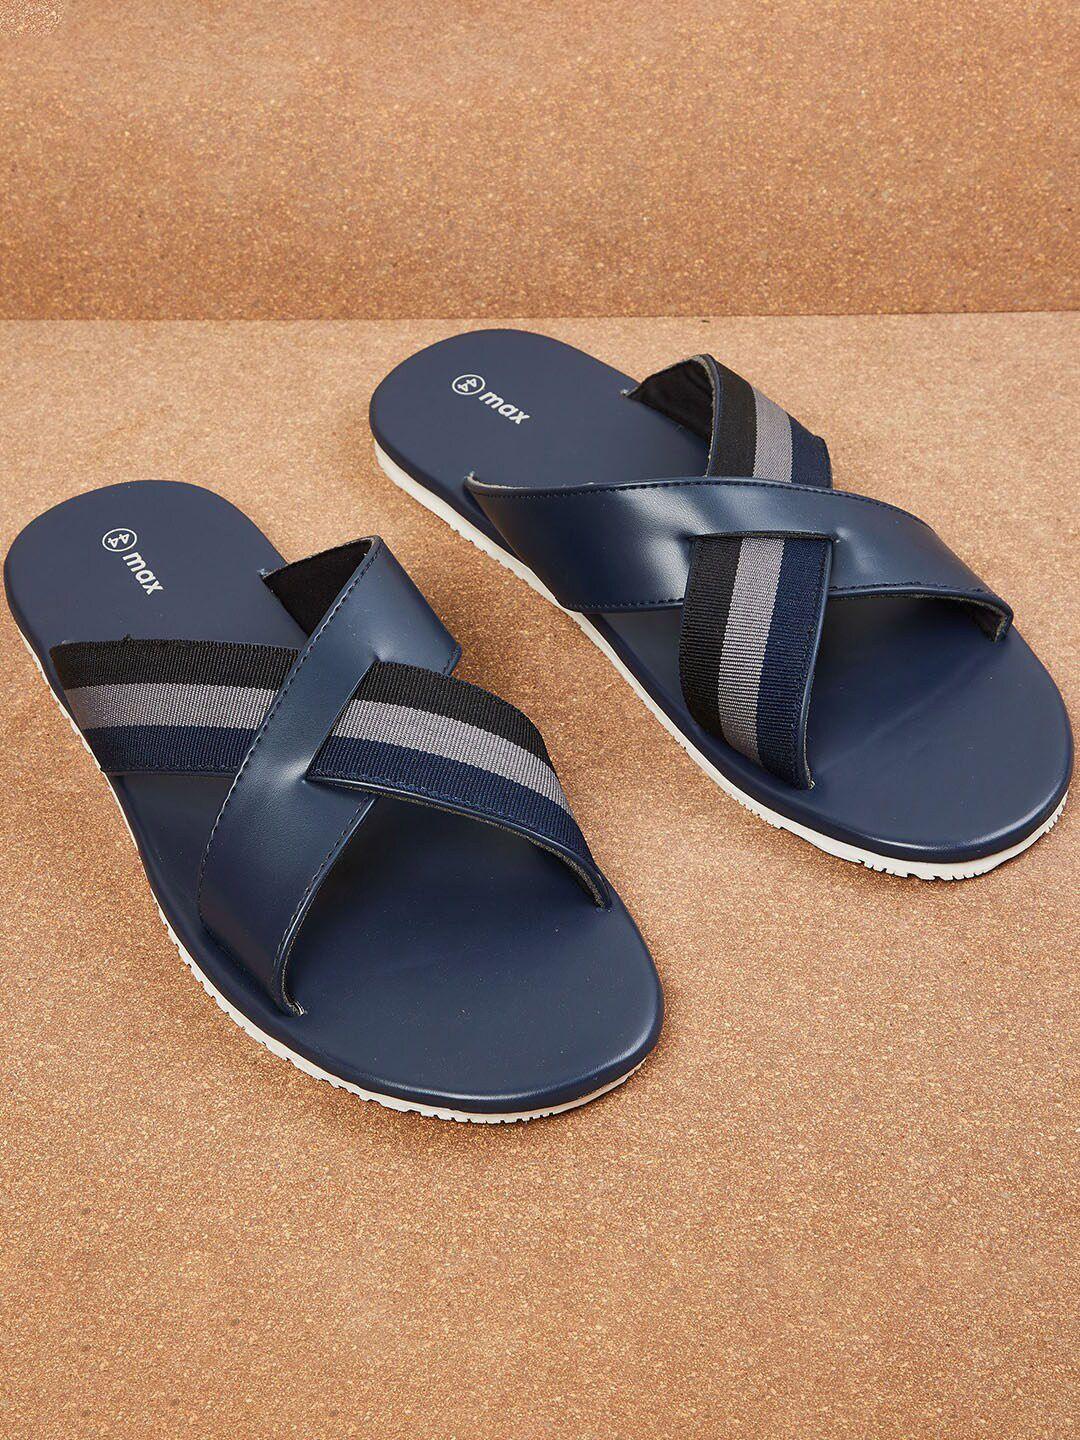 max-men-blue-&-grey-pu-comfort-sandals